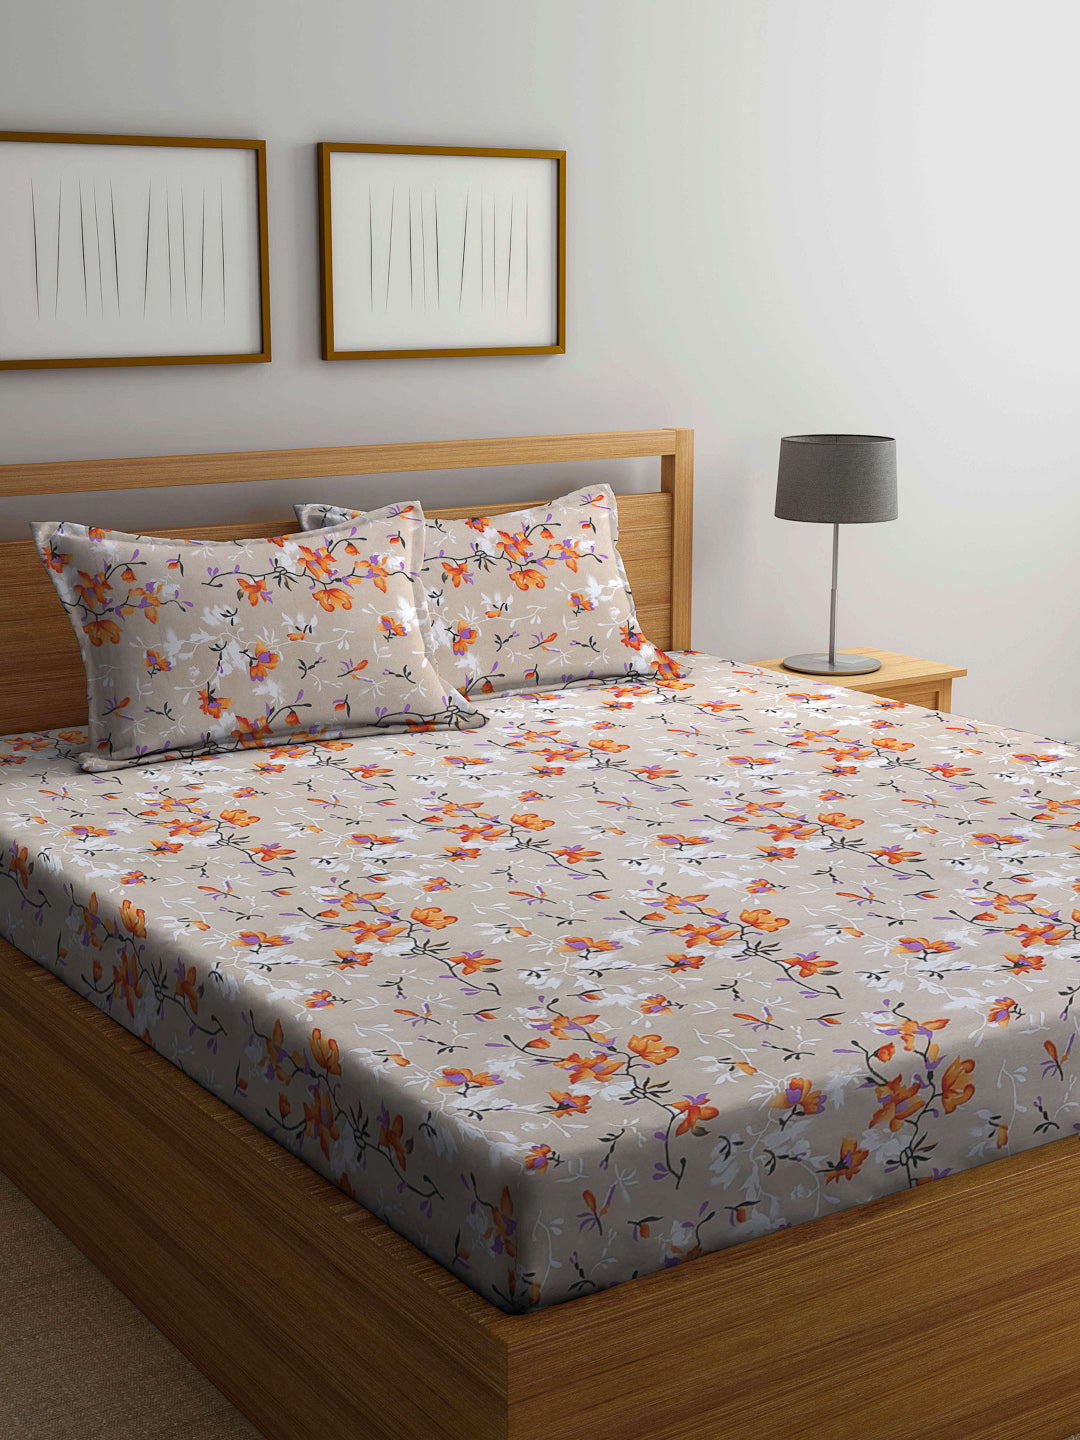 Arrabi Beige Floral TC Cotton Blend Double Size Bedsheet with 2 Pillow Covers (250 x 220 cm)